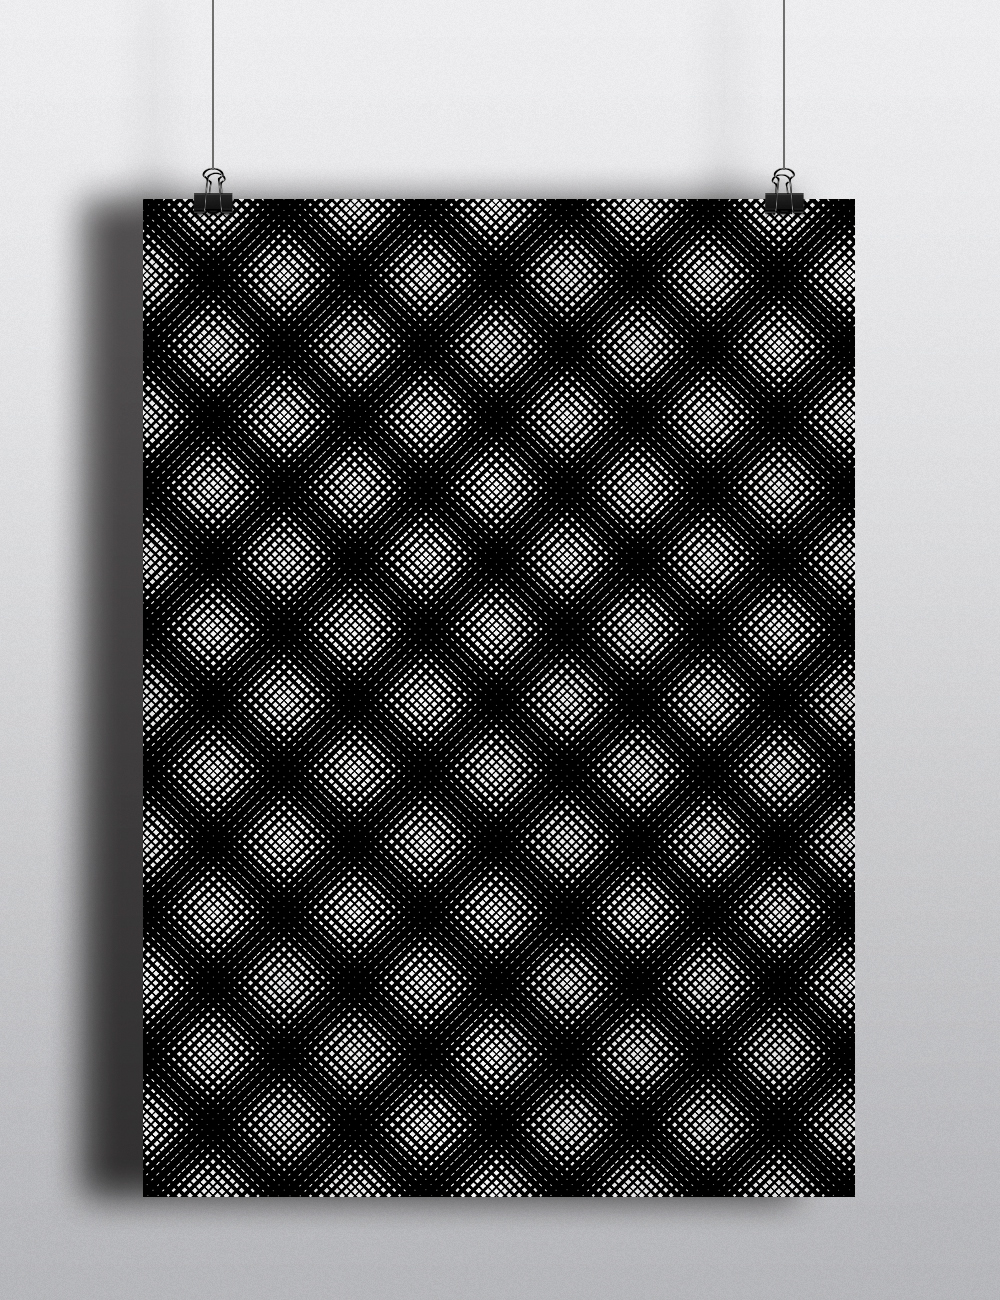 multimodale graphic design  poster Poster Design optical art black and white Exhibition  progettazione grafica